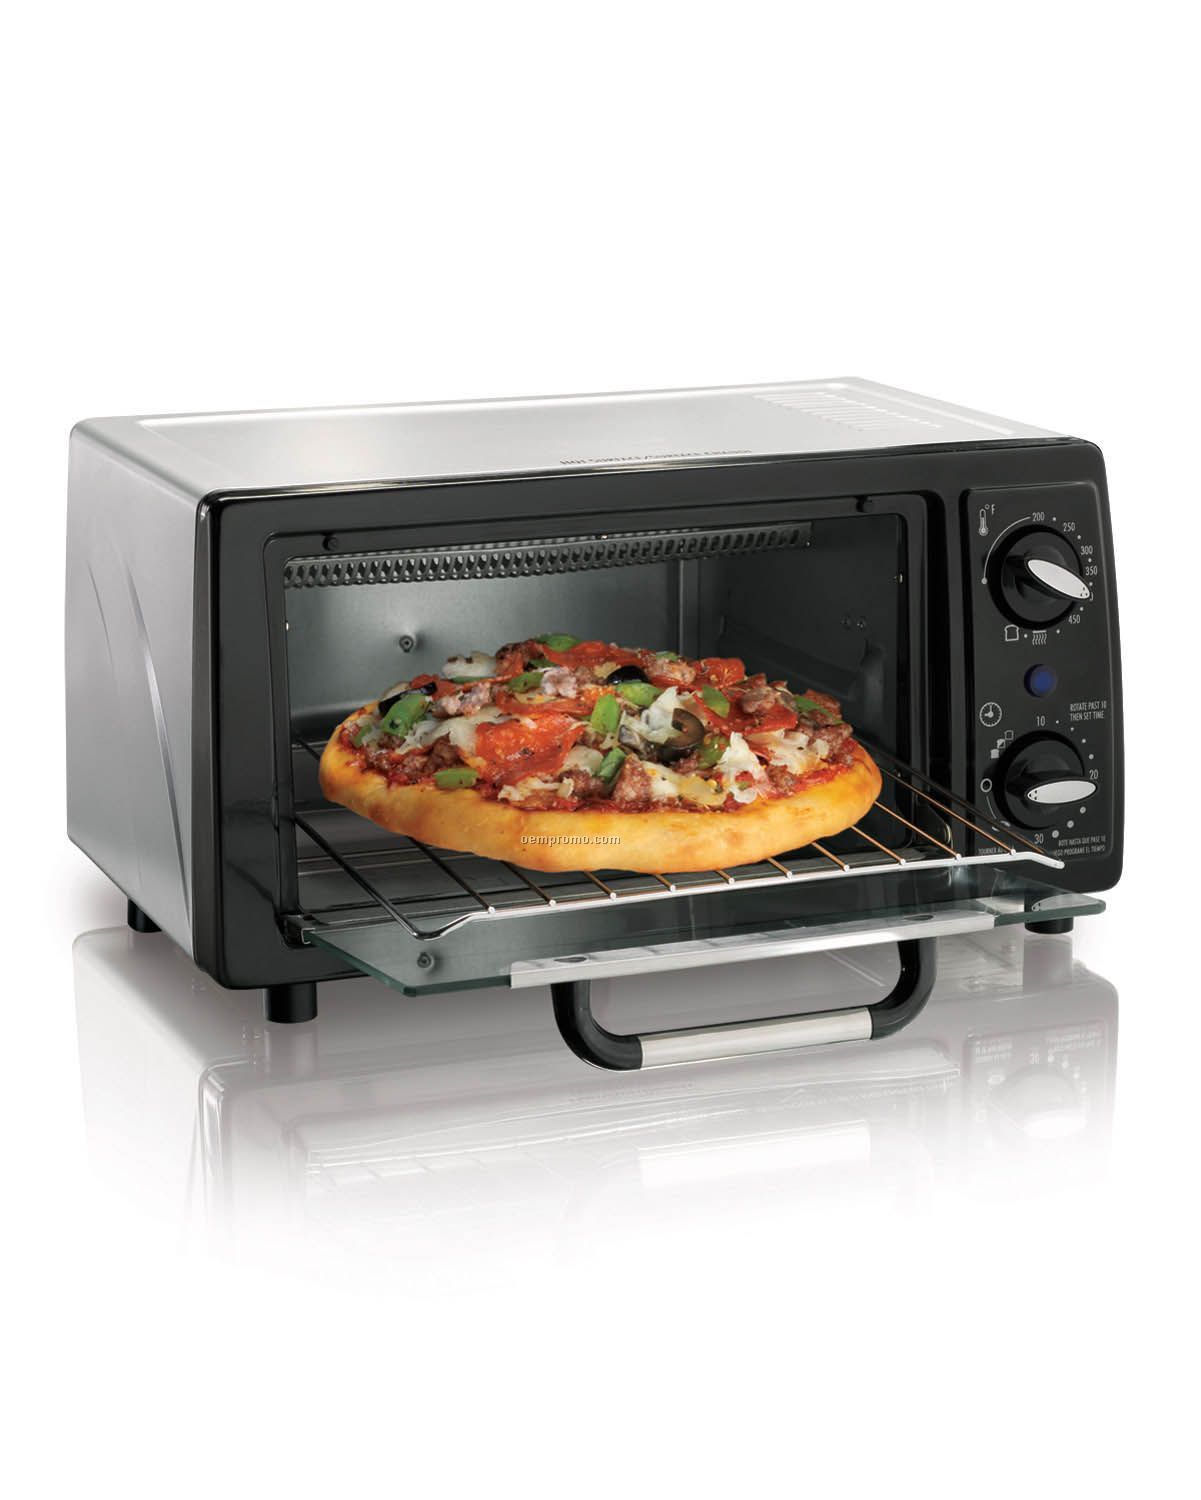 Hamilton Beach 4 Slice Capacity Toaster Oven